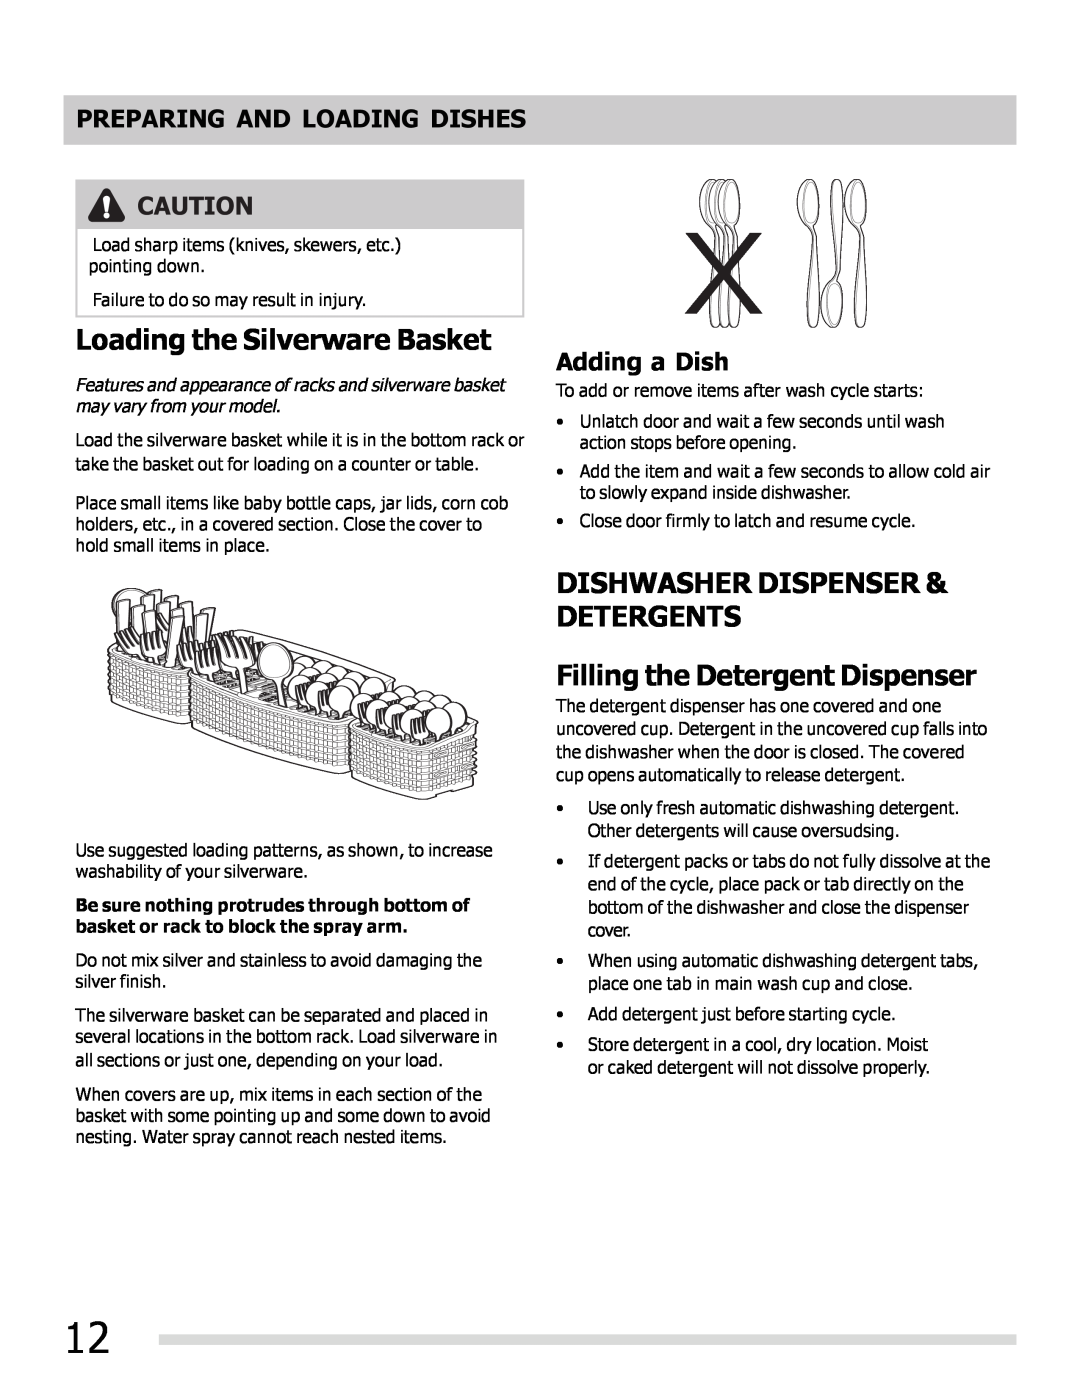 Frigidaire FPHD2485NF Loading the Silverware Basket, Dishwasher Dispenser & Detergents, Filling the Detergent Dispenser 